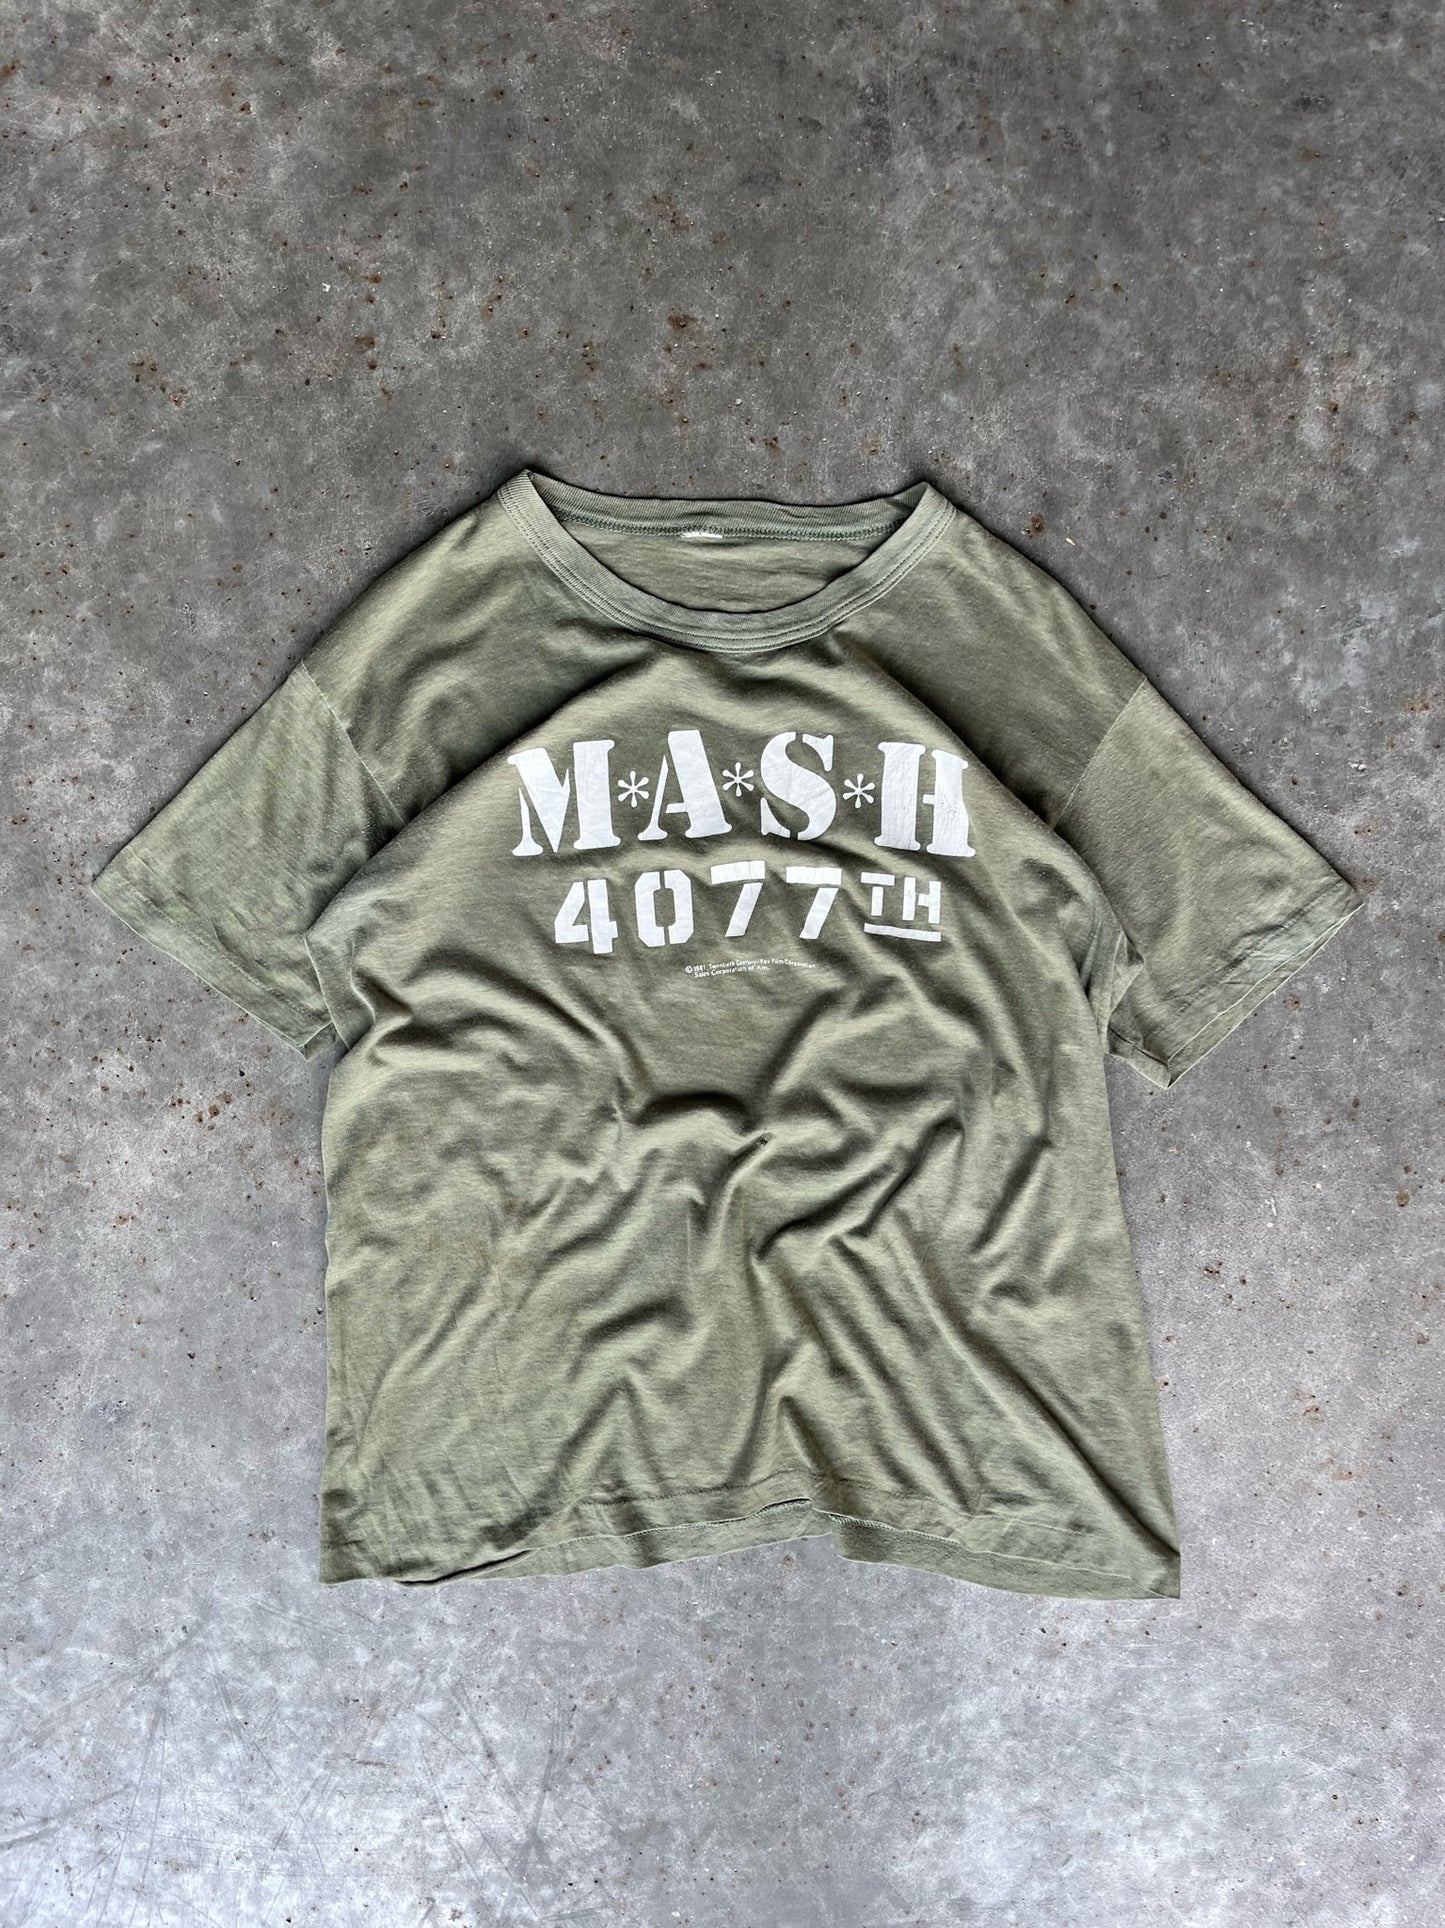 Vintage “Mash 4077th” Shirt - M